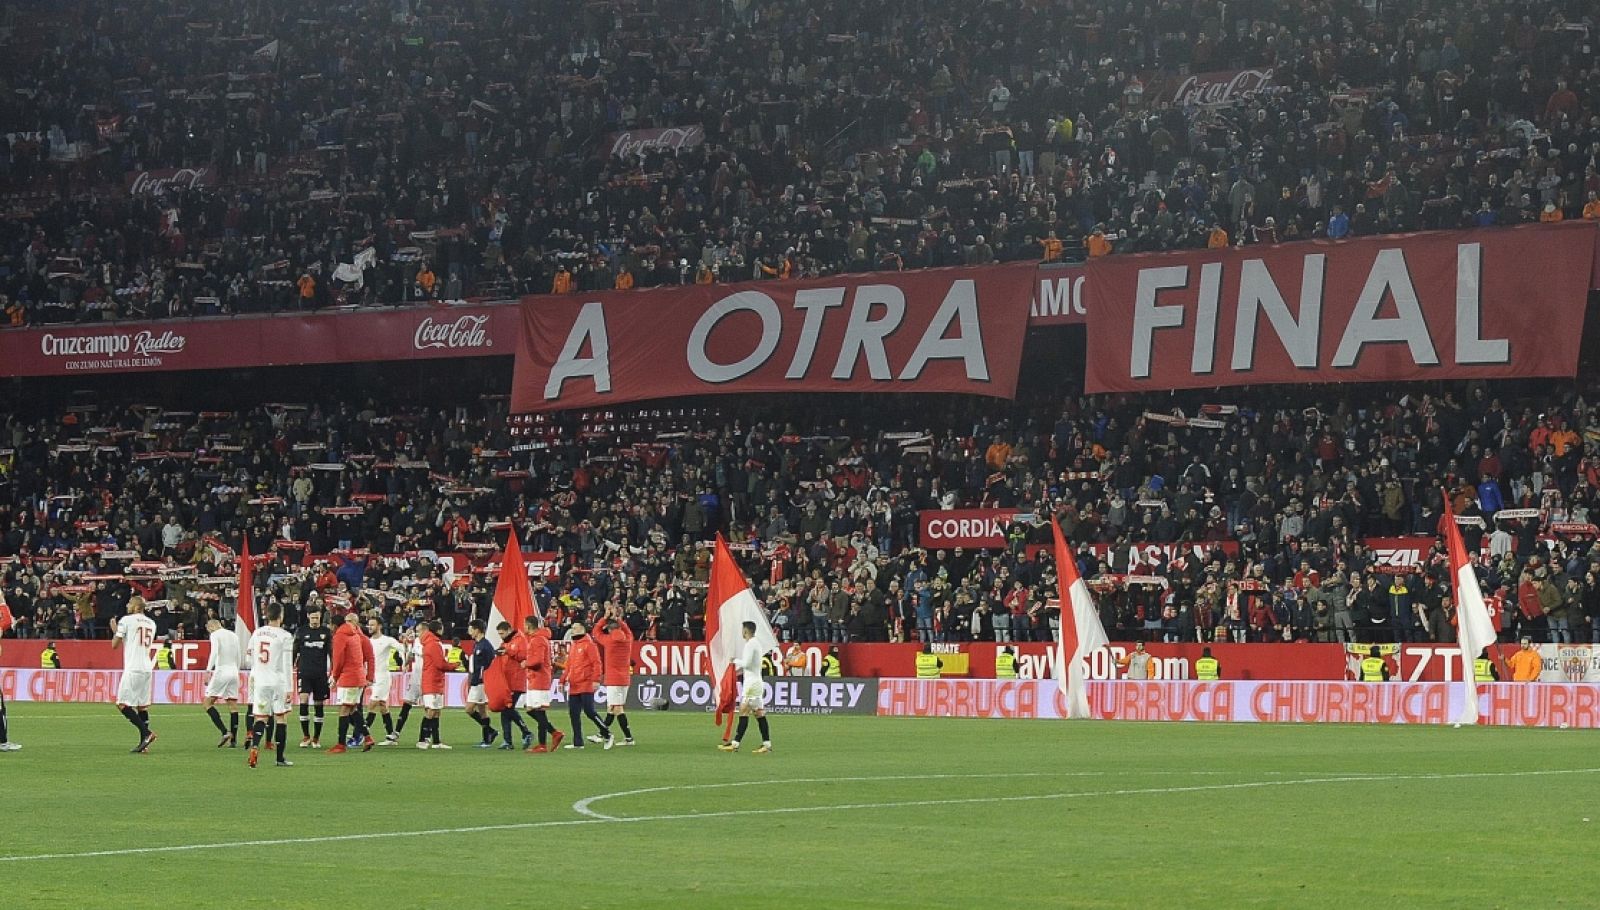 El Sevilla, a otra final